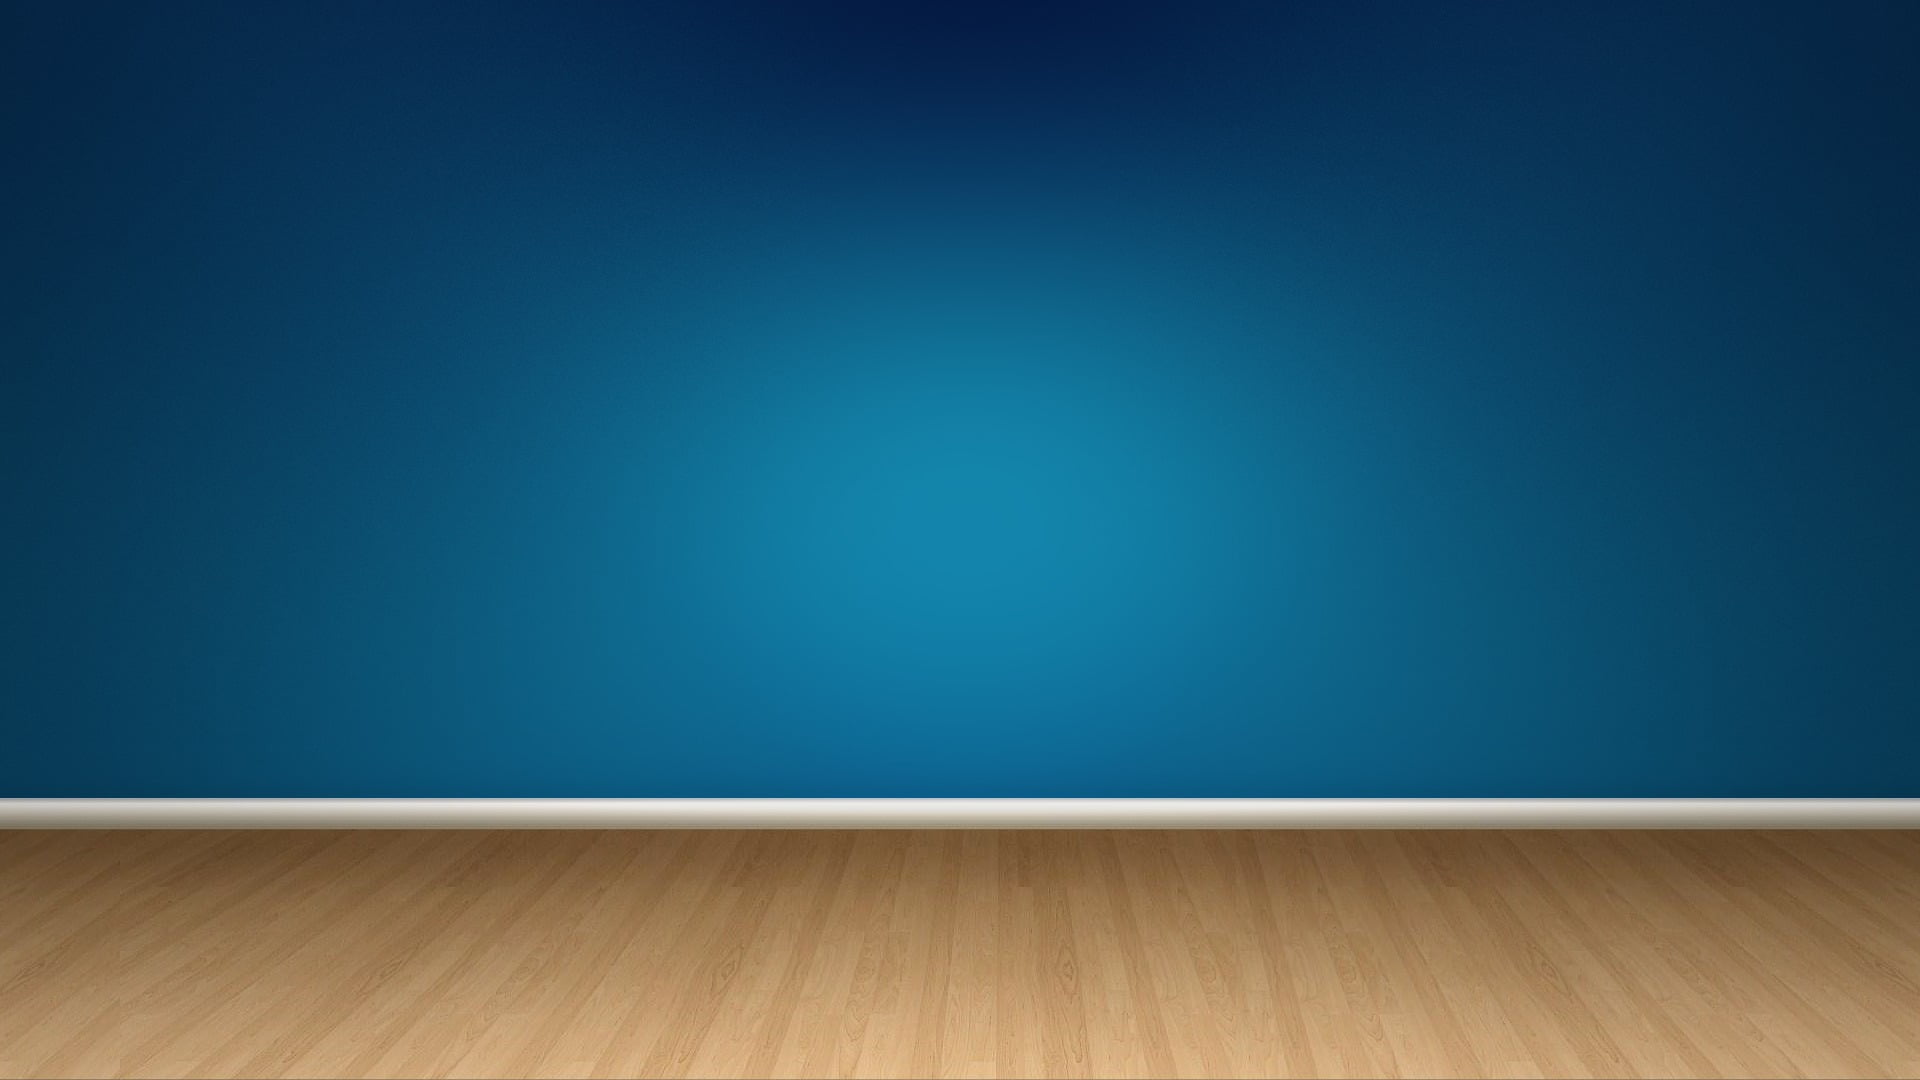 brown oak flooring, wall, blue, copy space, hardwood floor, indoors